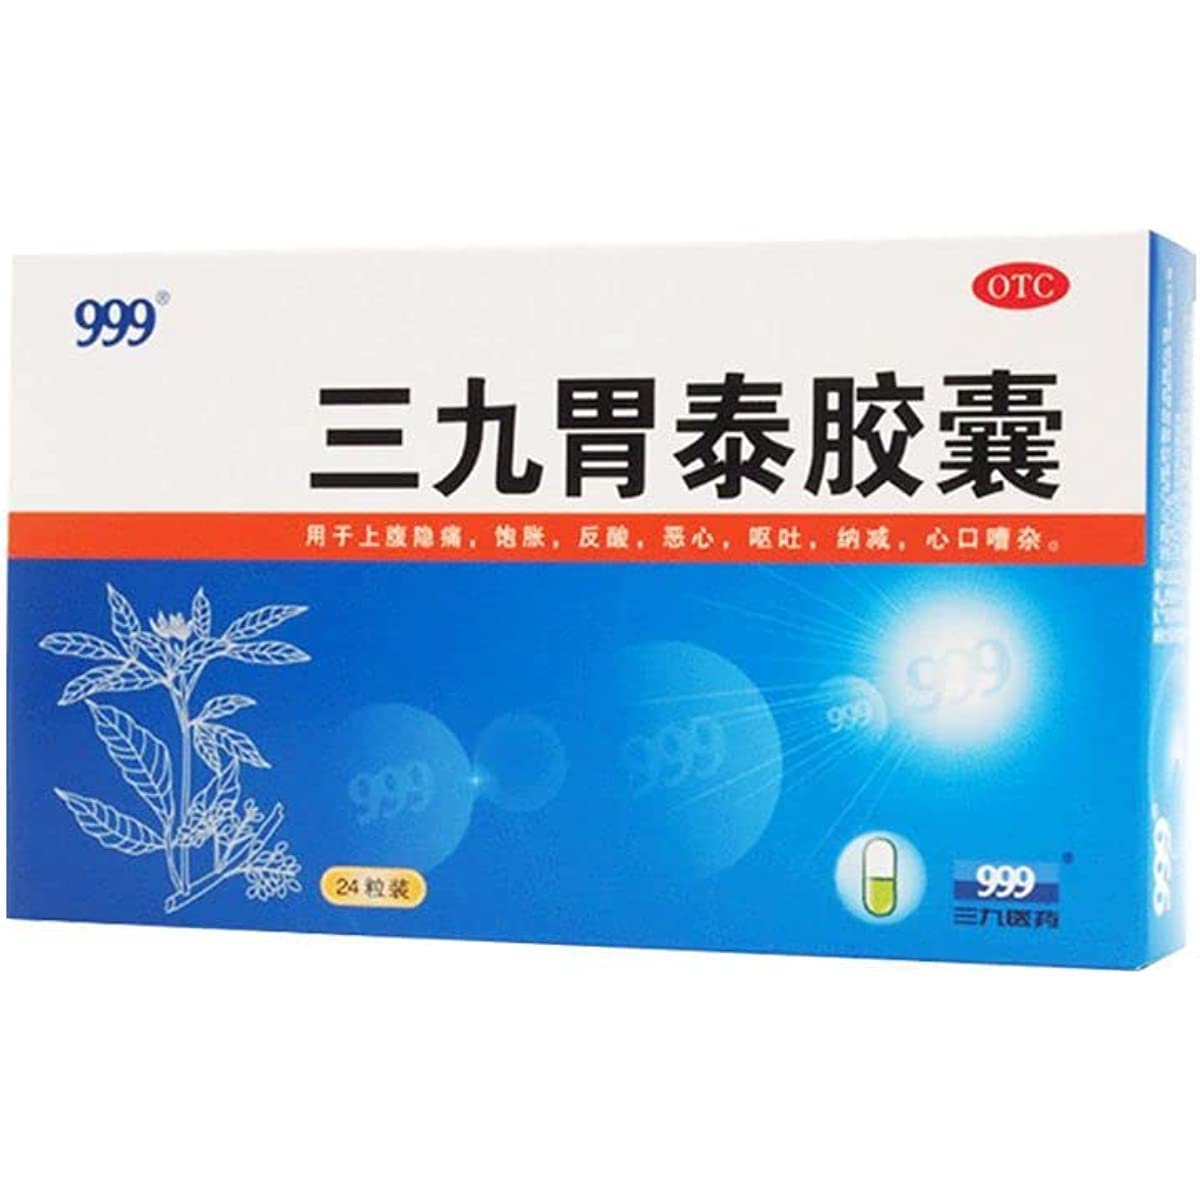 1 Box, Weitai Jiaonang 24 Capsules / Box 胃泰胶囊